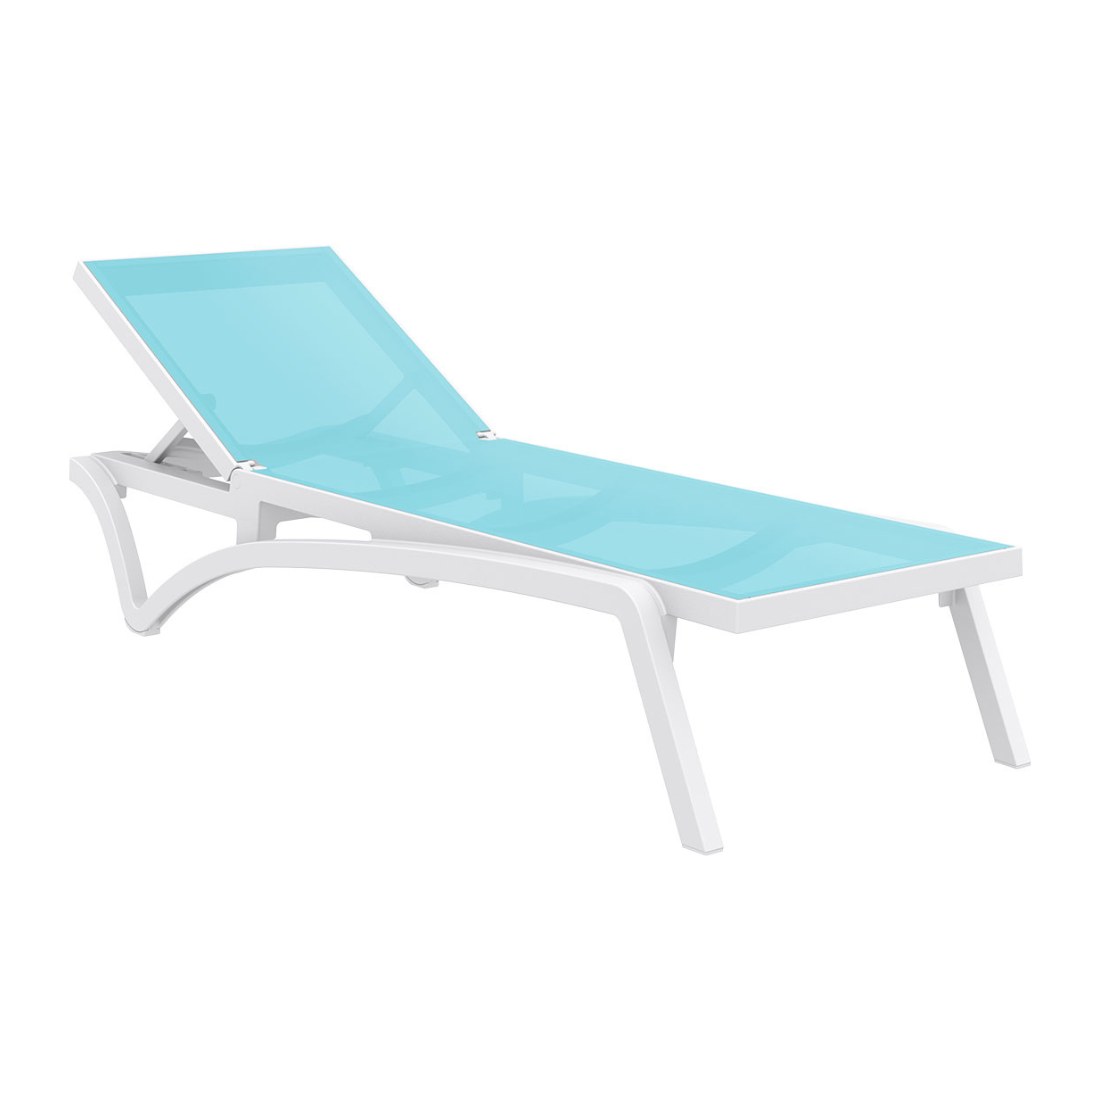 Siesta Pacific Sonnenliege aus Kunststoff mit rutschfesten Füßen und Rädern - turquoise/weiß